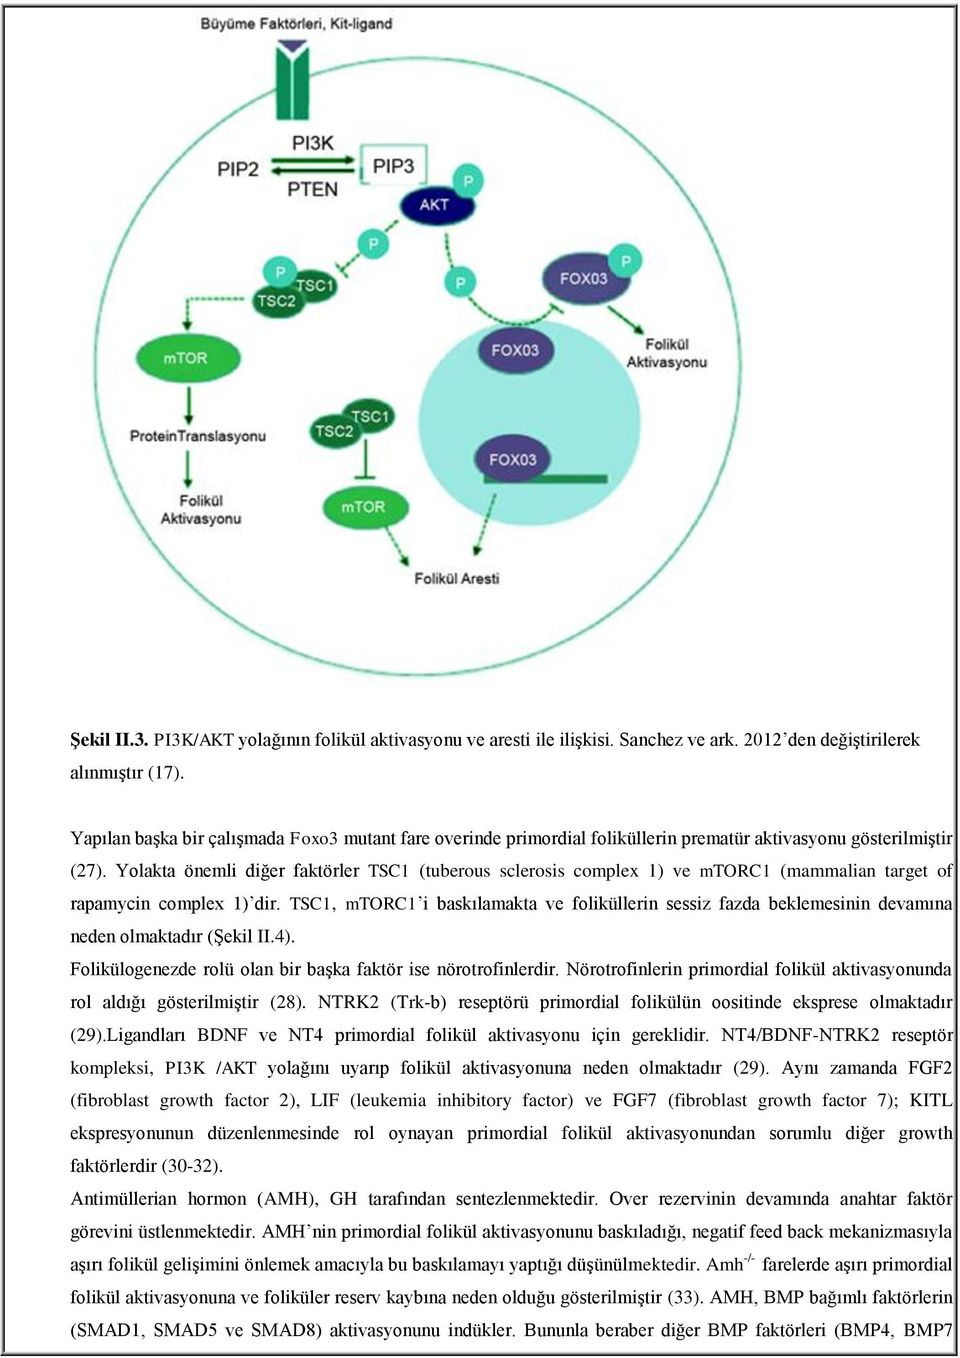 Yolakta önemli diğer faktörler TSC1 (tuberous sclerosis complex 1) ve mtorc1 (mammalian target of rapamycin complex 1) dir.